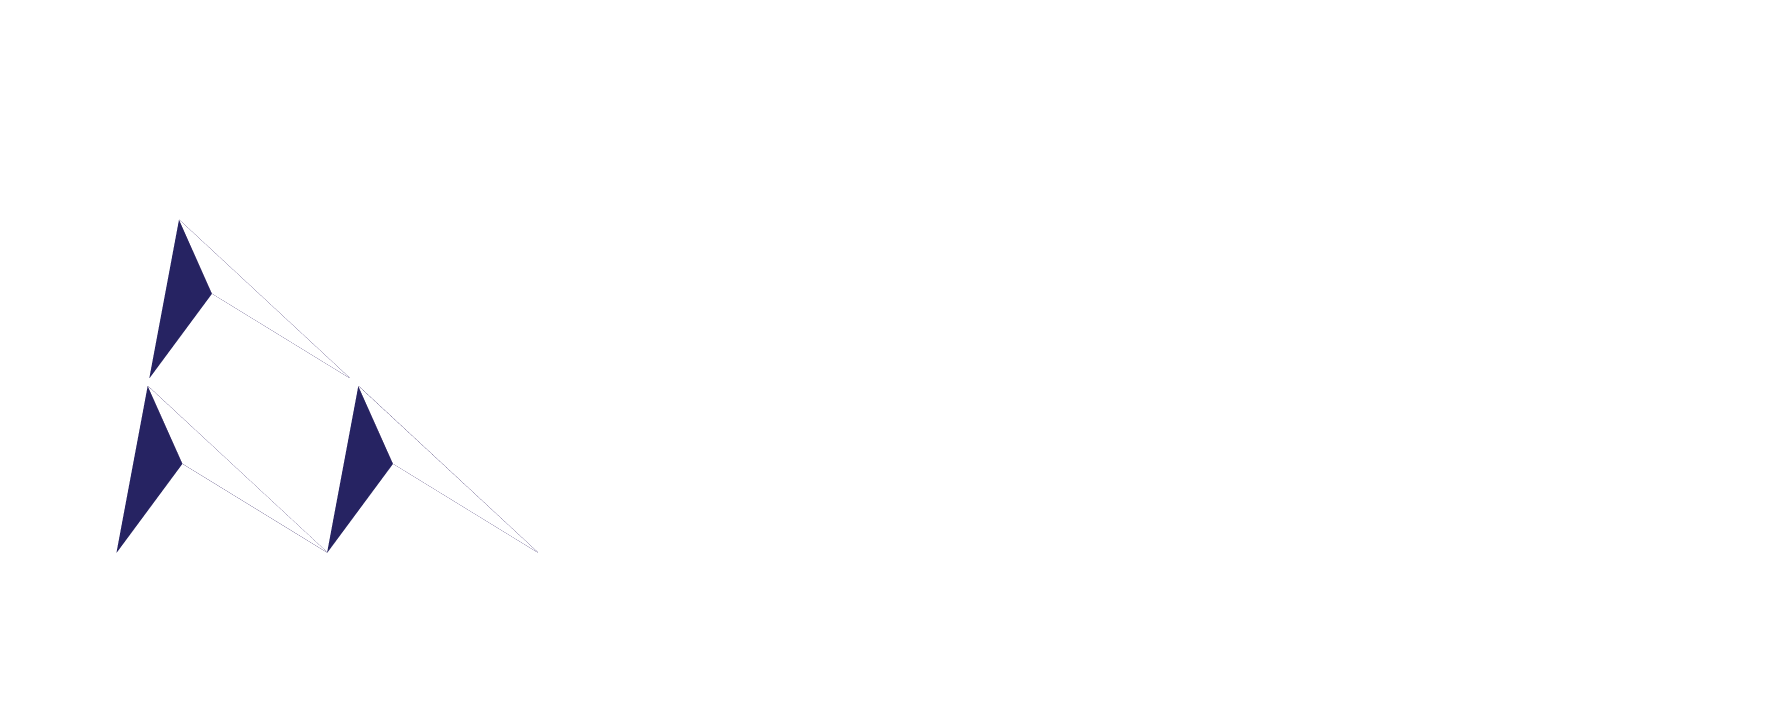 AMPB CONSULTANT